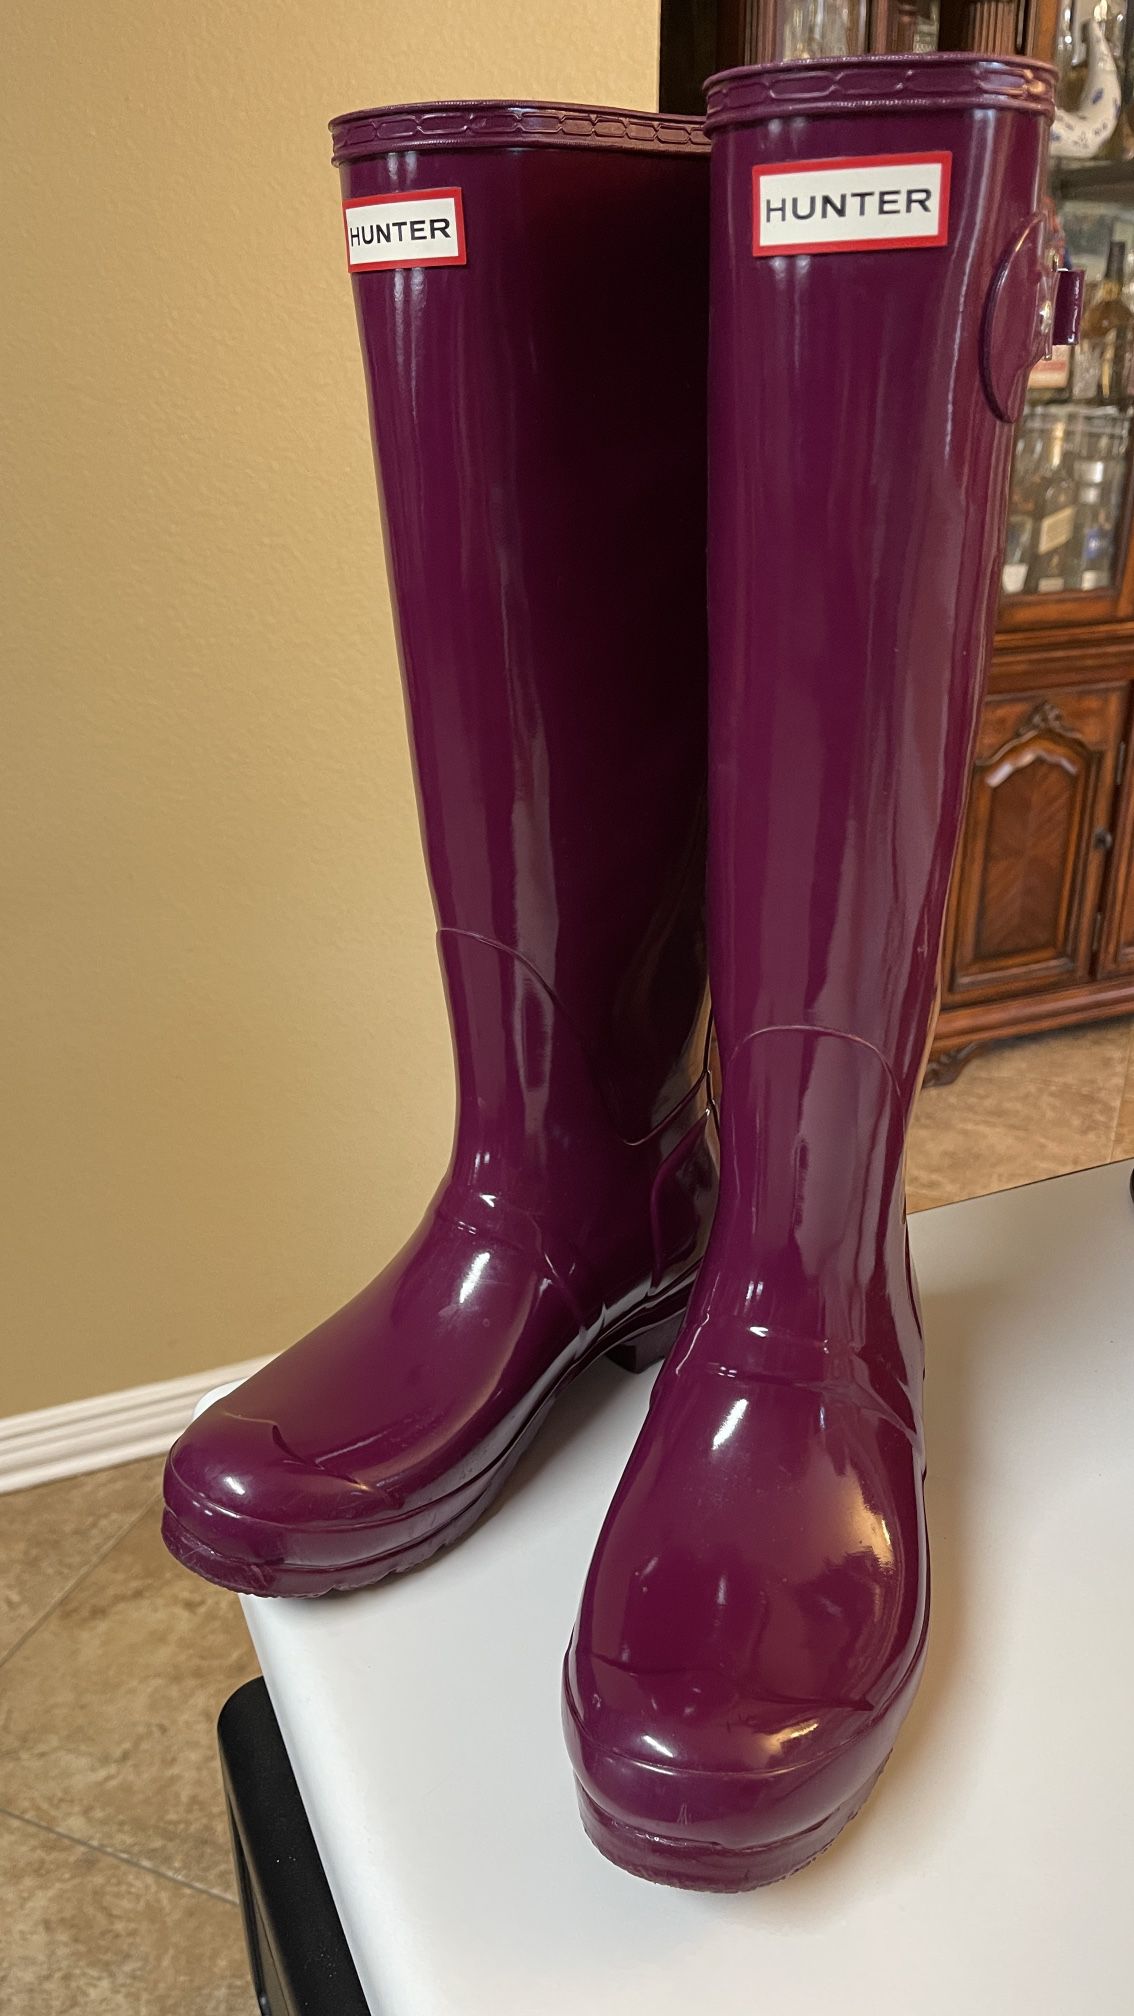 Hunter original tall gloss violet women’s rain boots size 9 